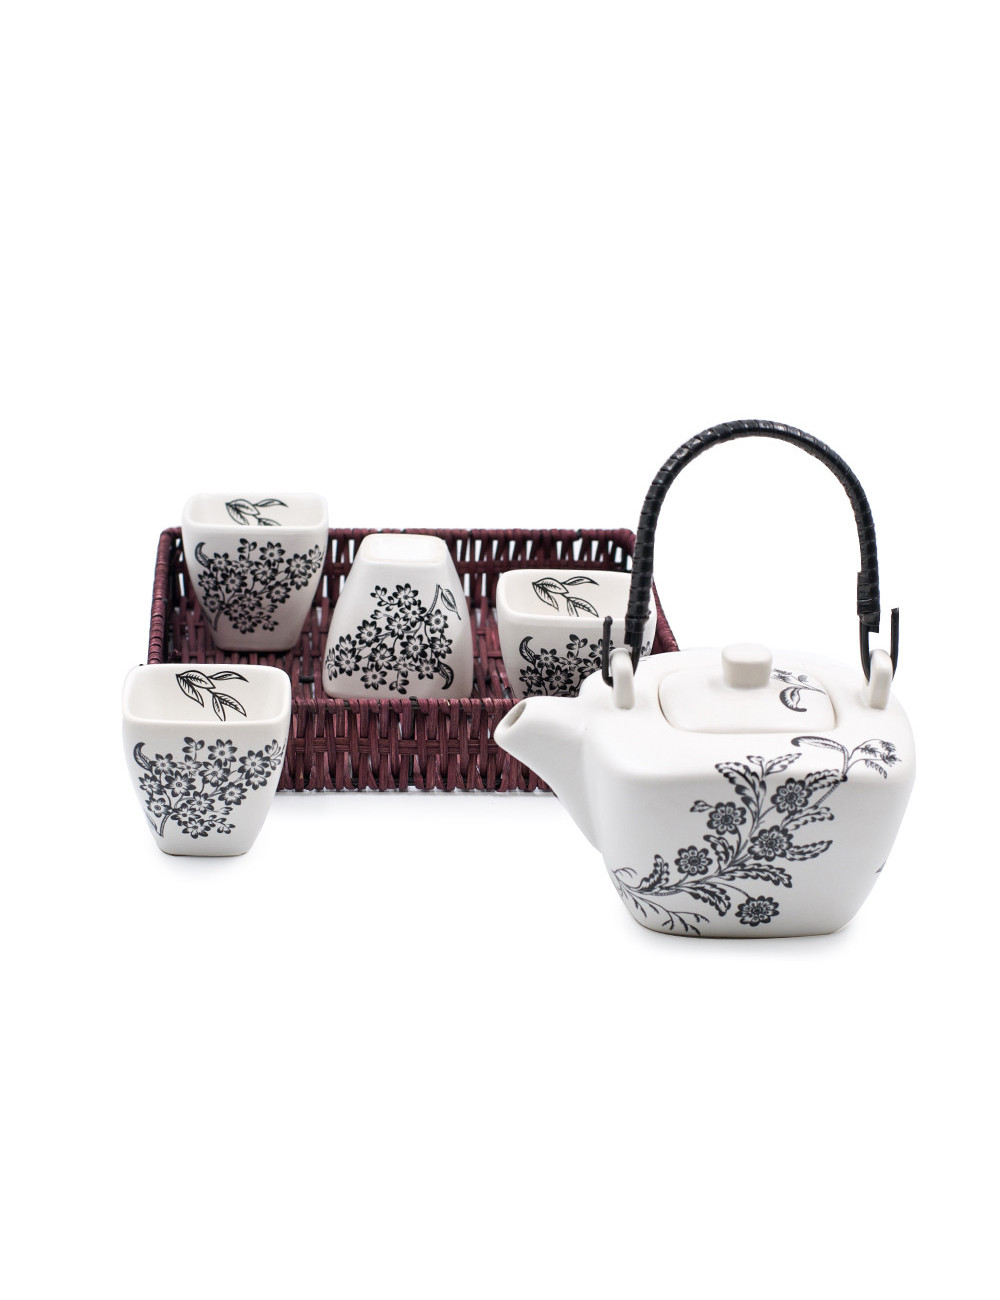 Set da tè Yukiko in ceramica bianco satinato con disegni floreali neri da 400 ml - La Pianta del Tè Shop online